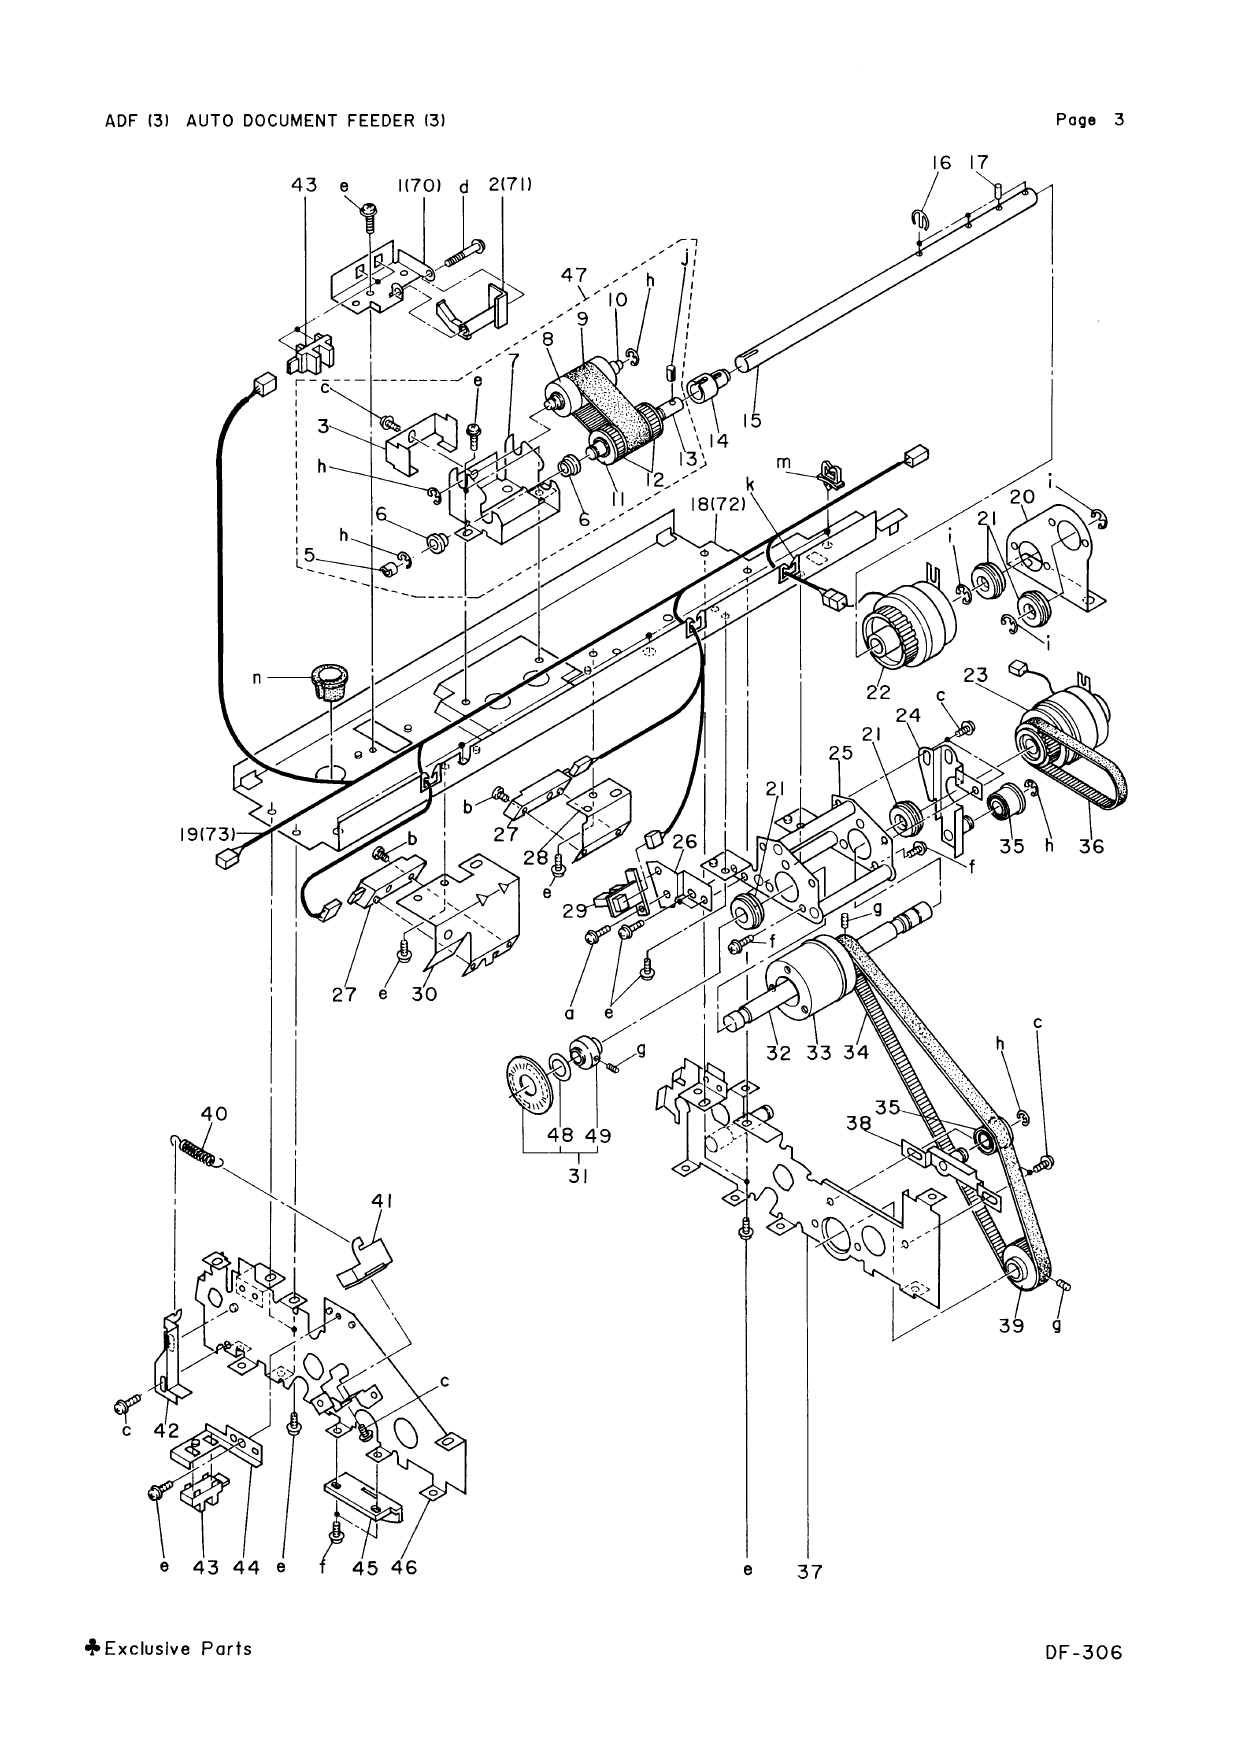 Konica-Minolta Options DF-306 Parts Manual-6